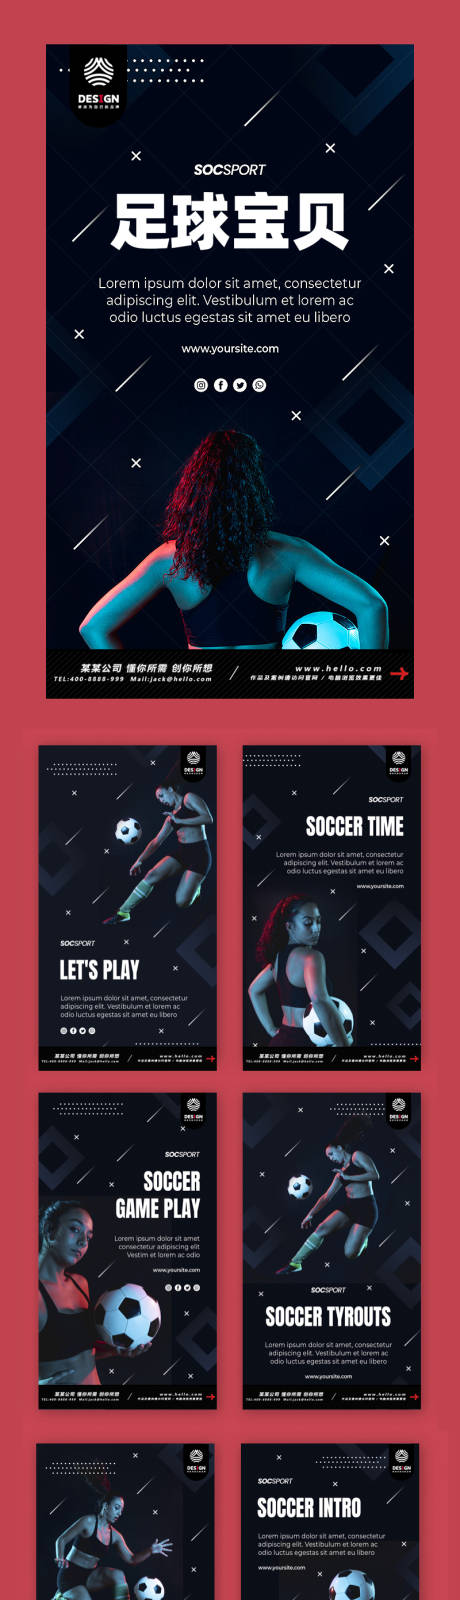 足球宝贝运动健身撸铁正能量海报